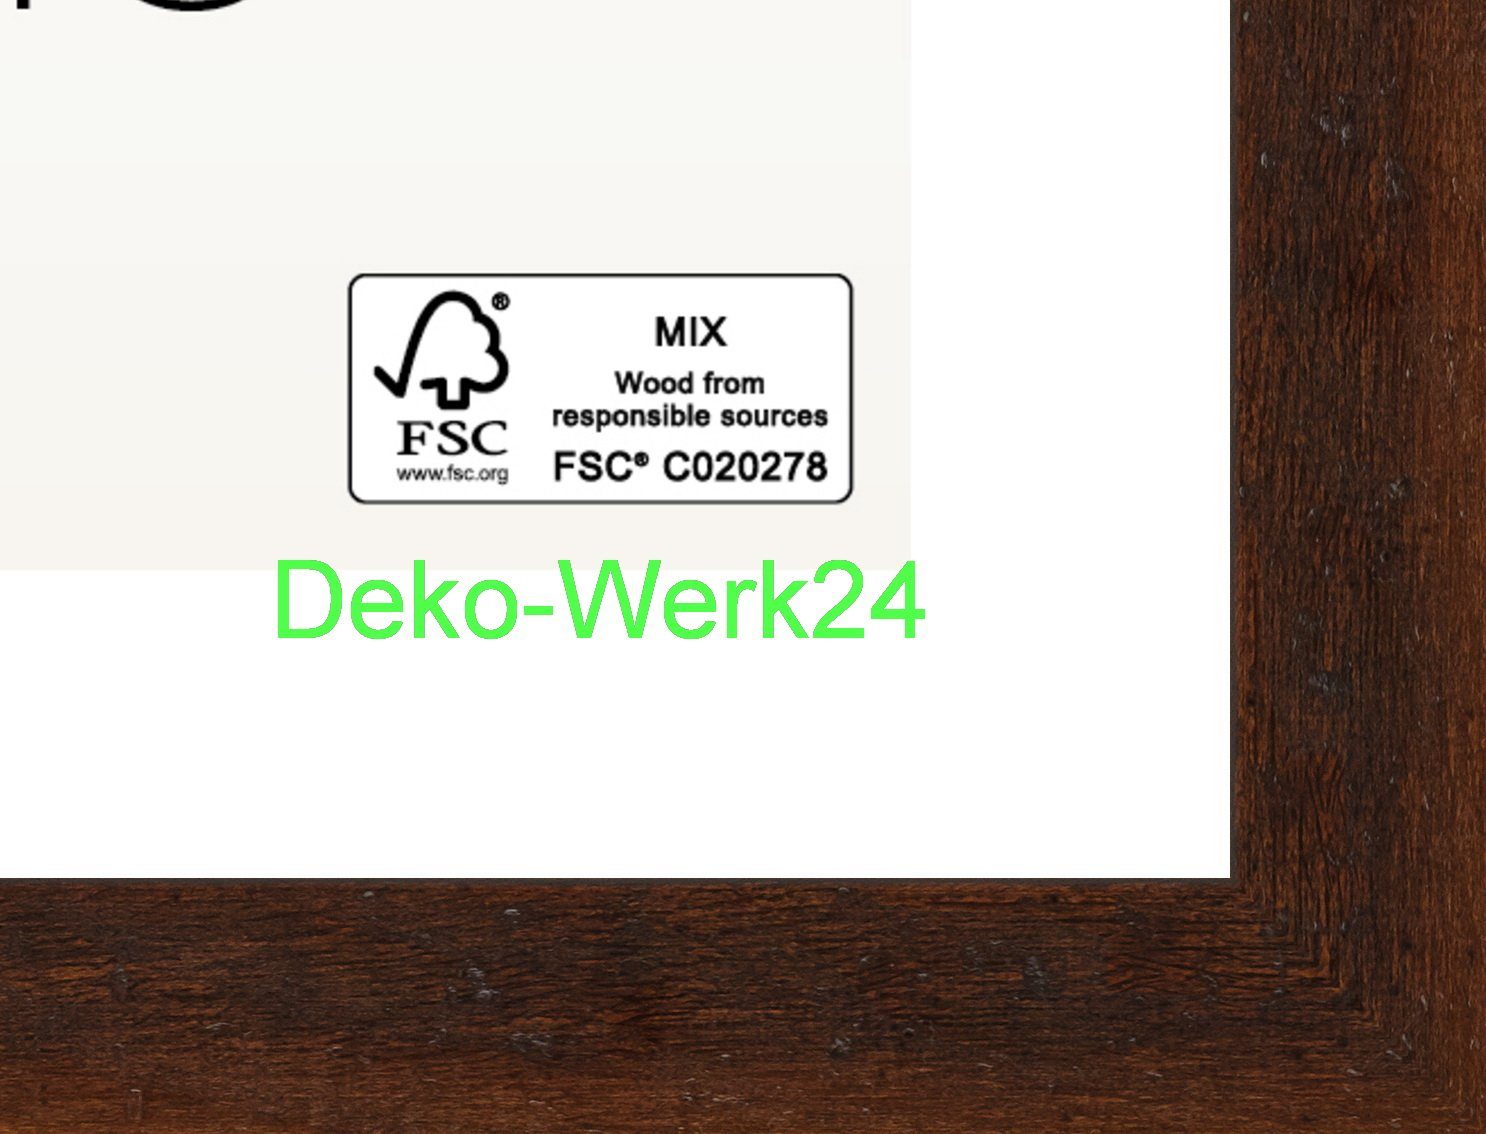 Deko-Werk 24